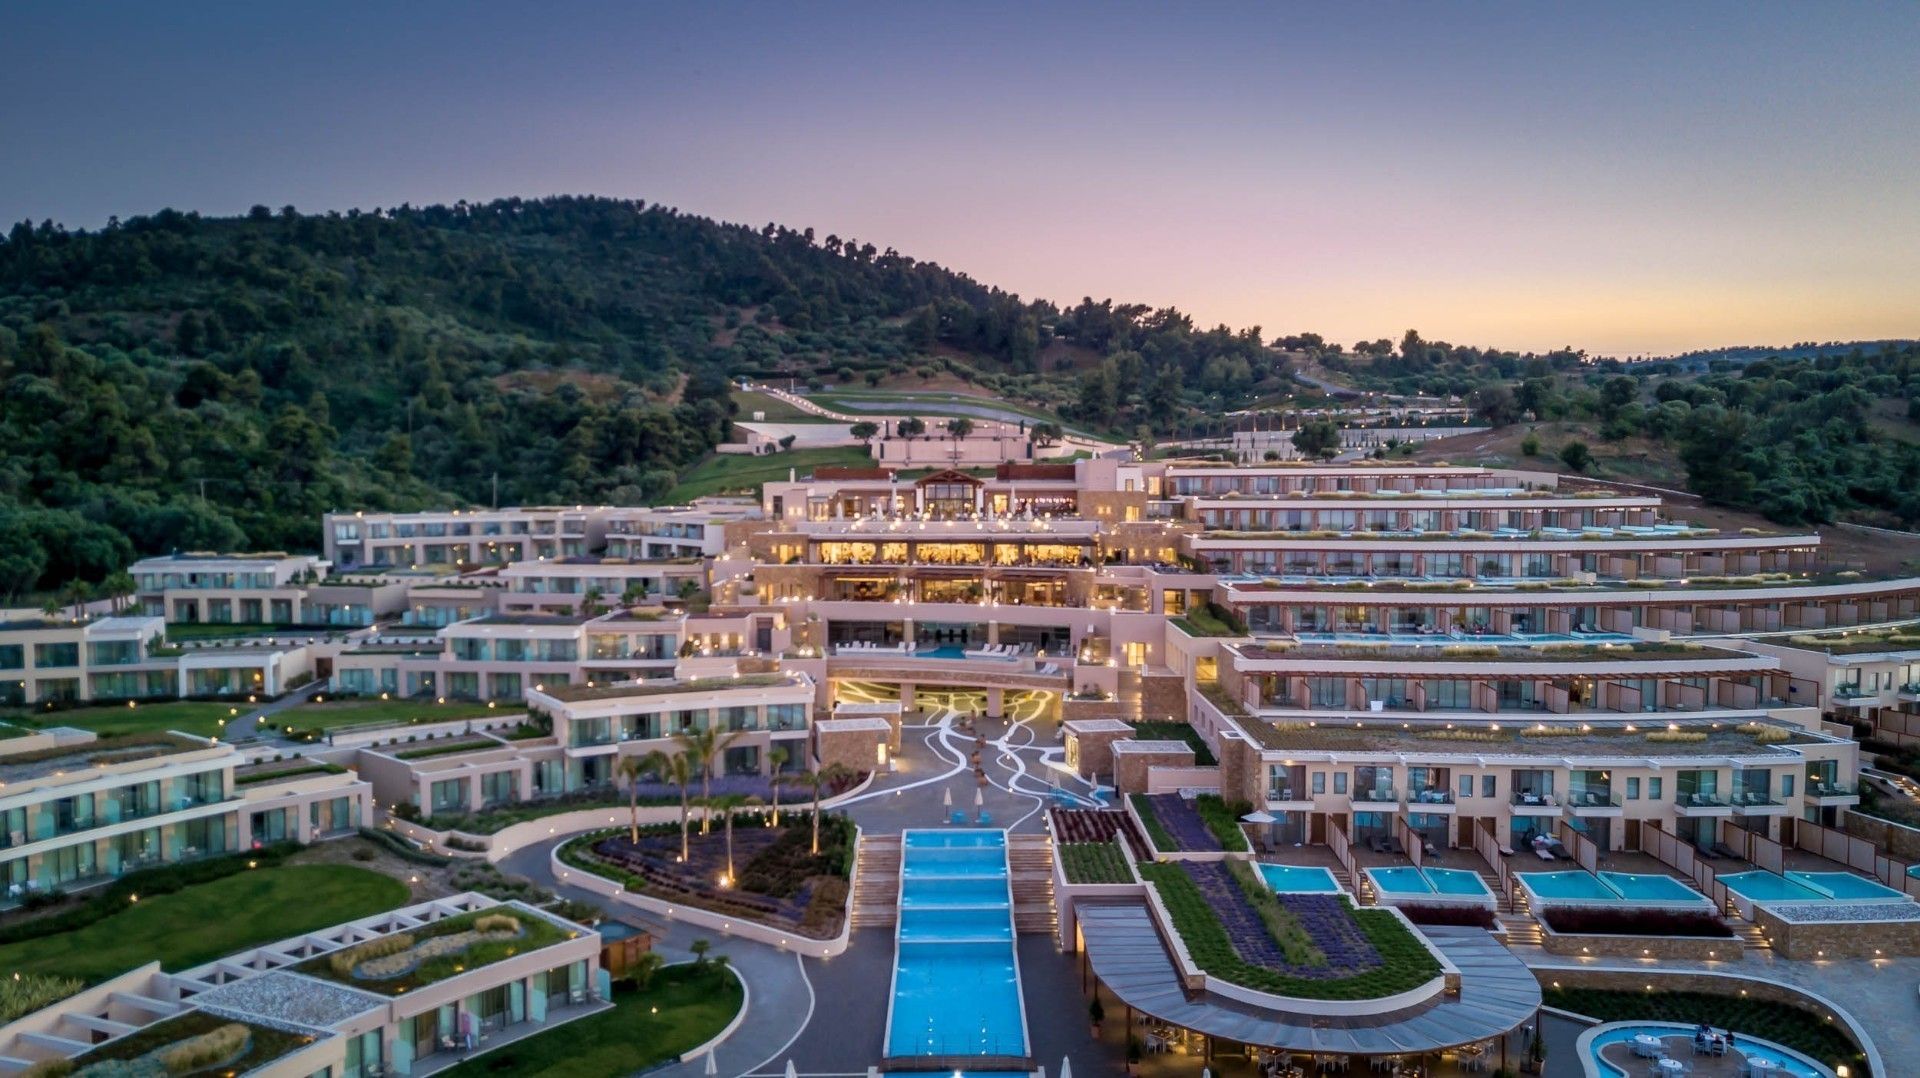 Miraggio thermal spa resort